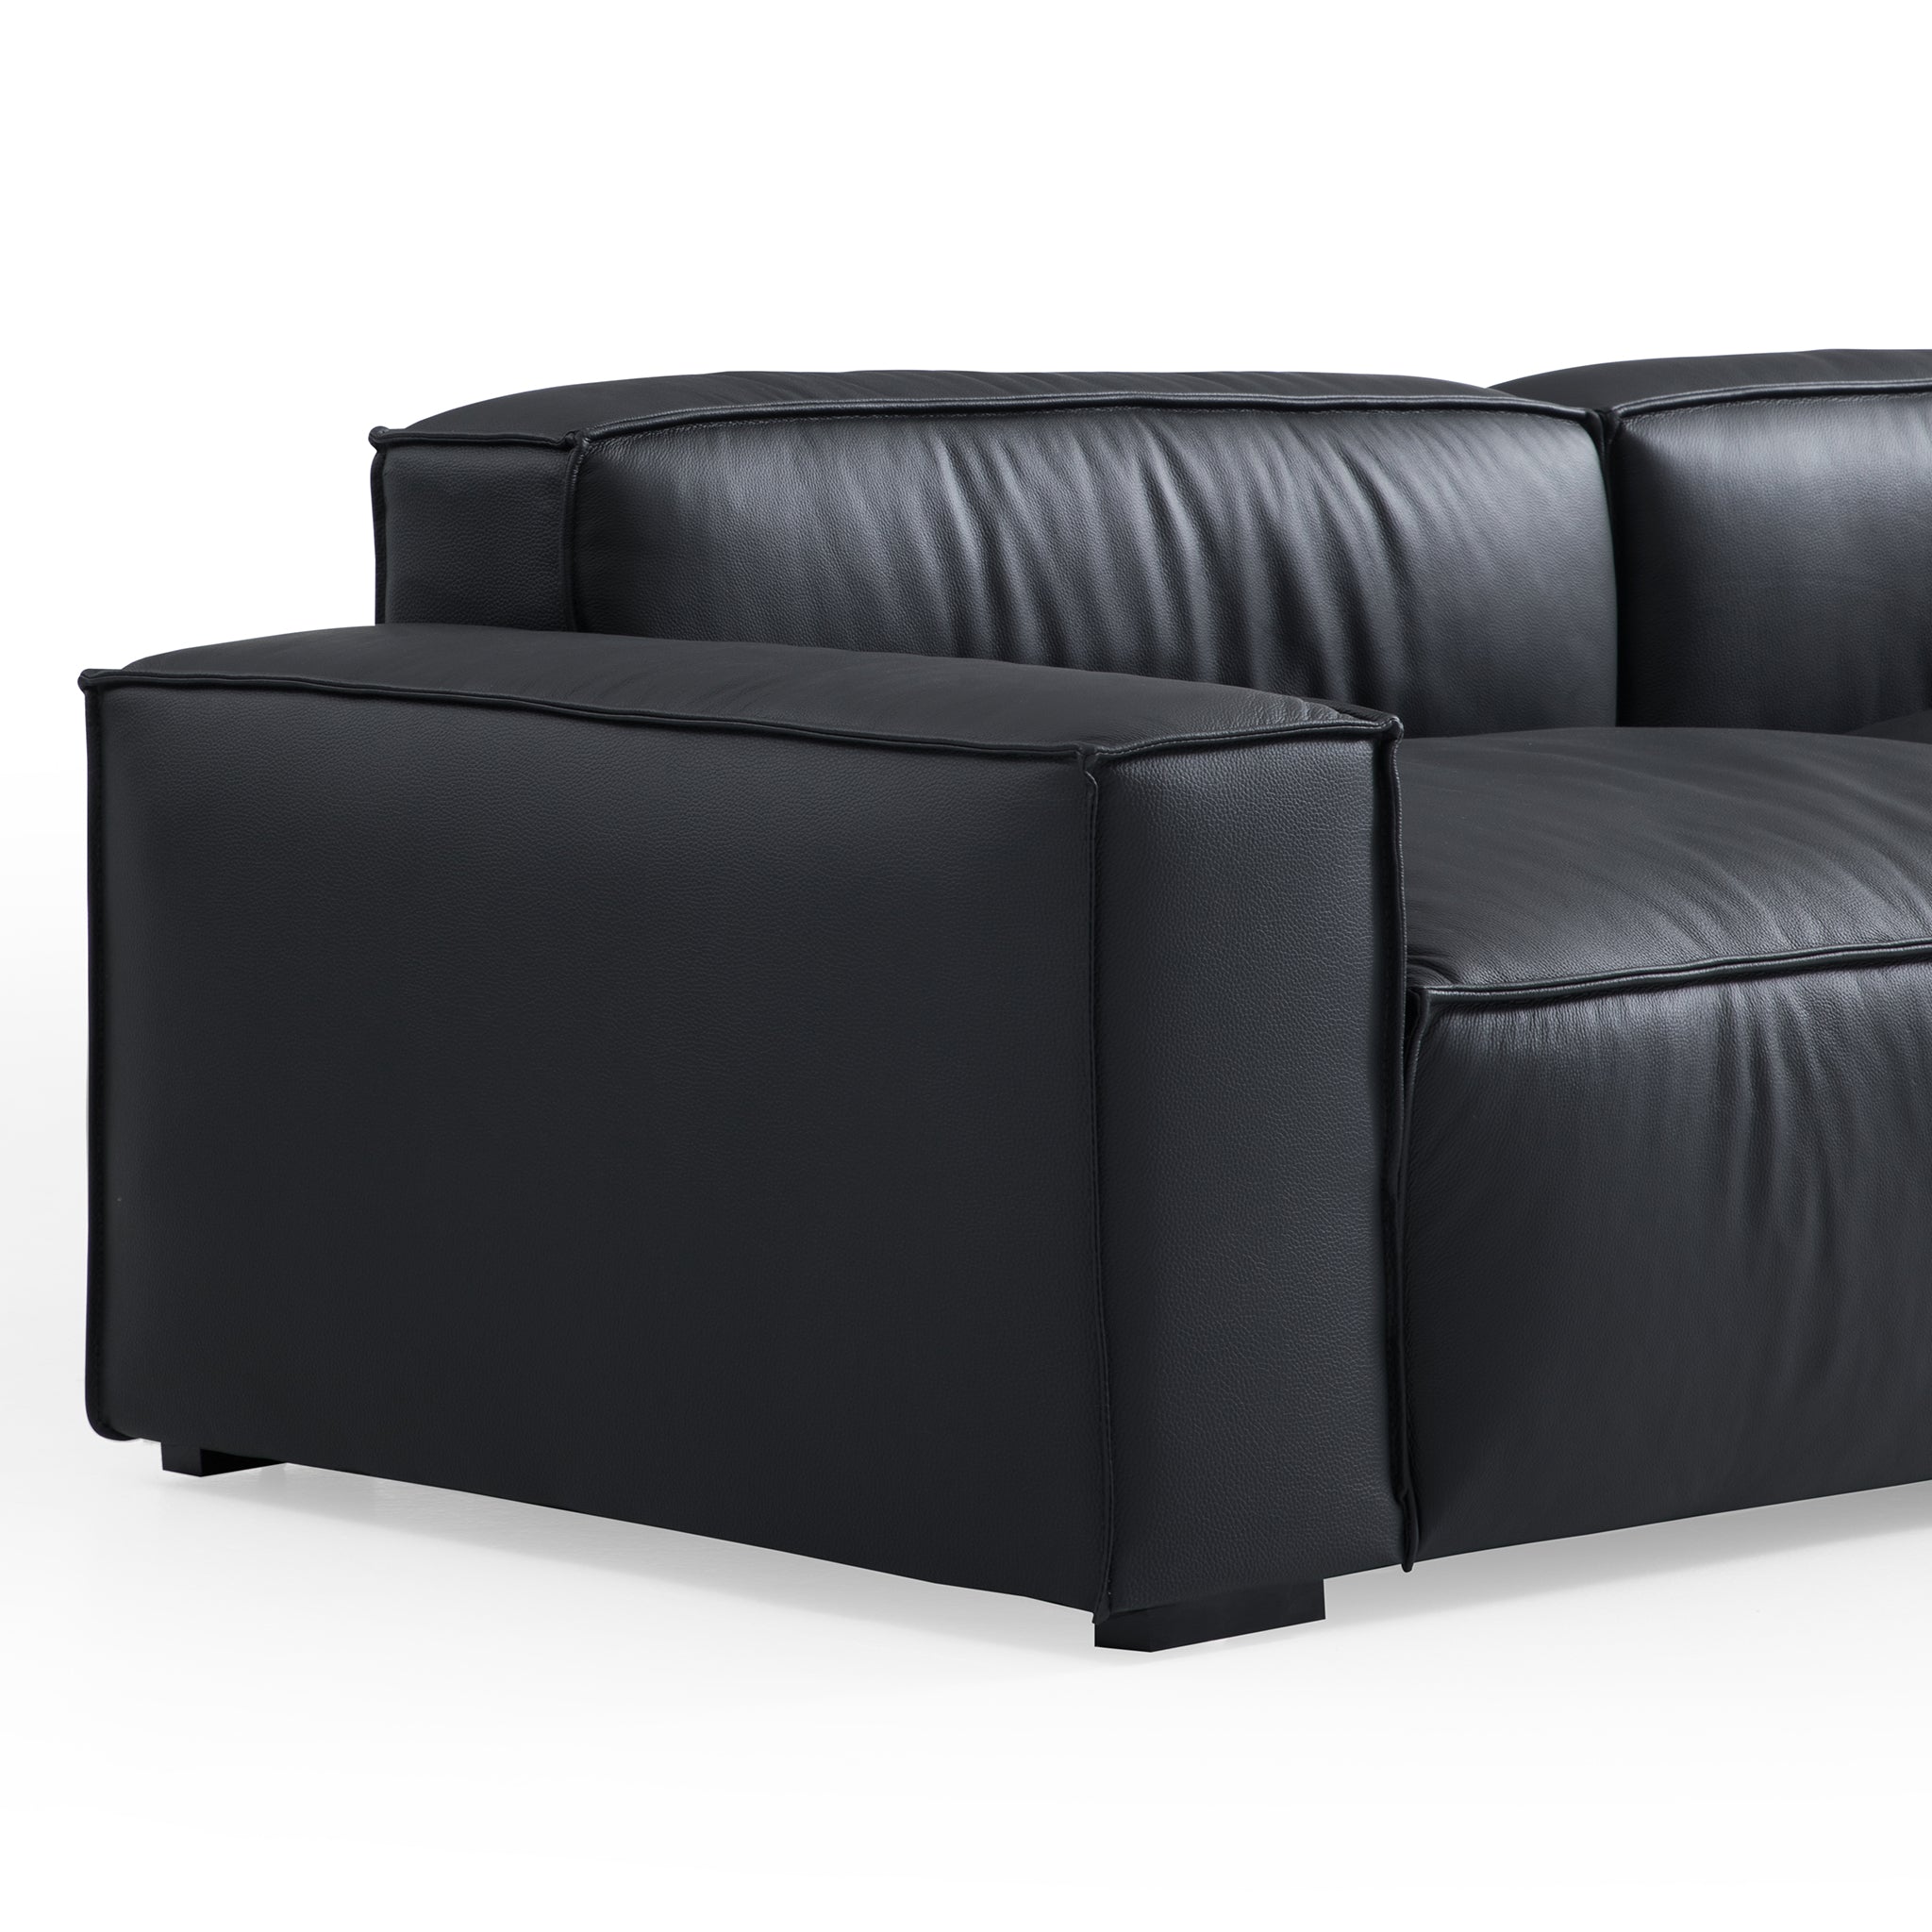 Luxury Minimalist Leather Black Sofa And Ottoman